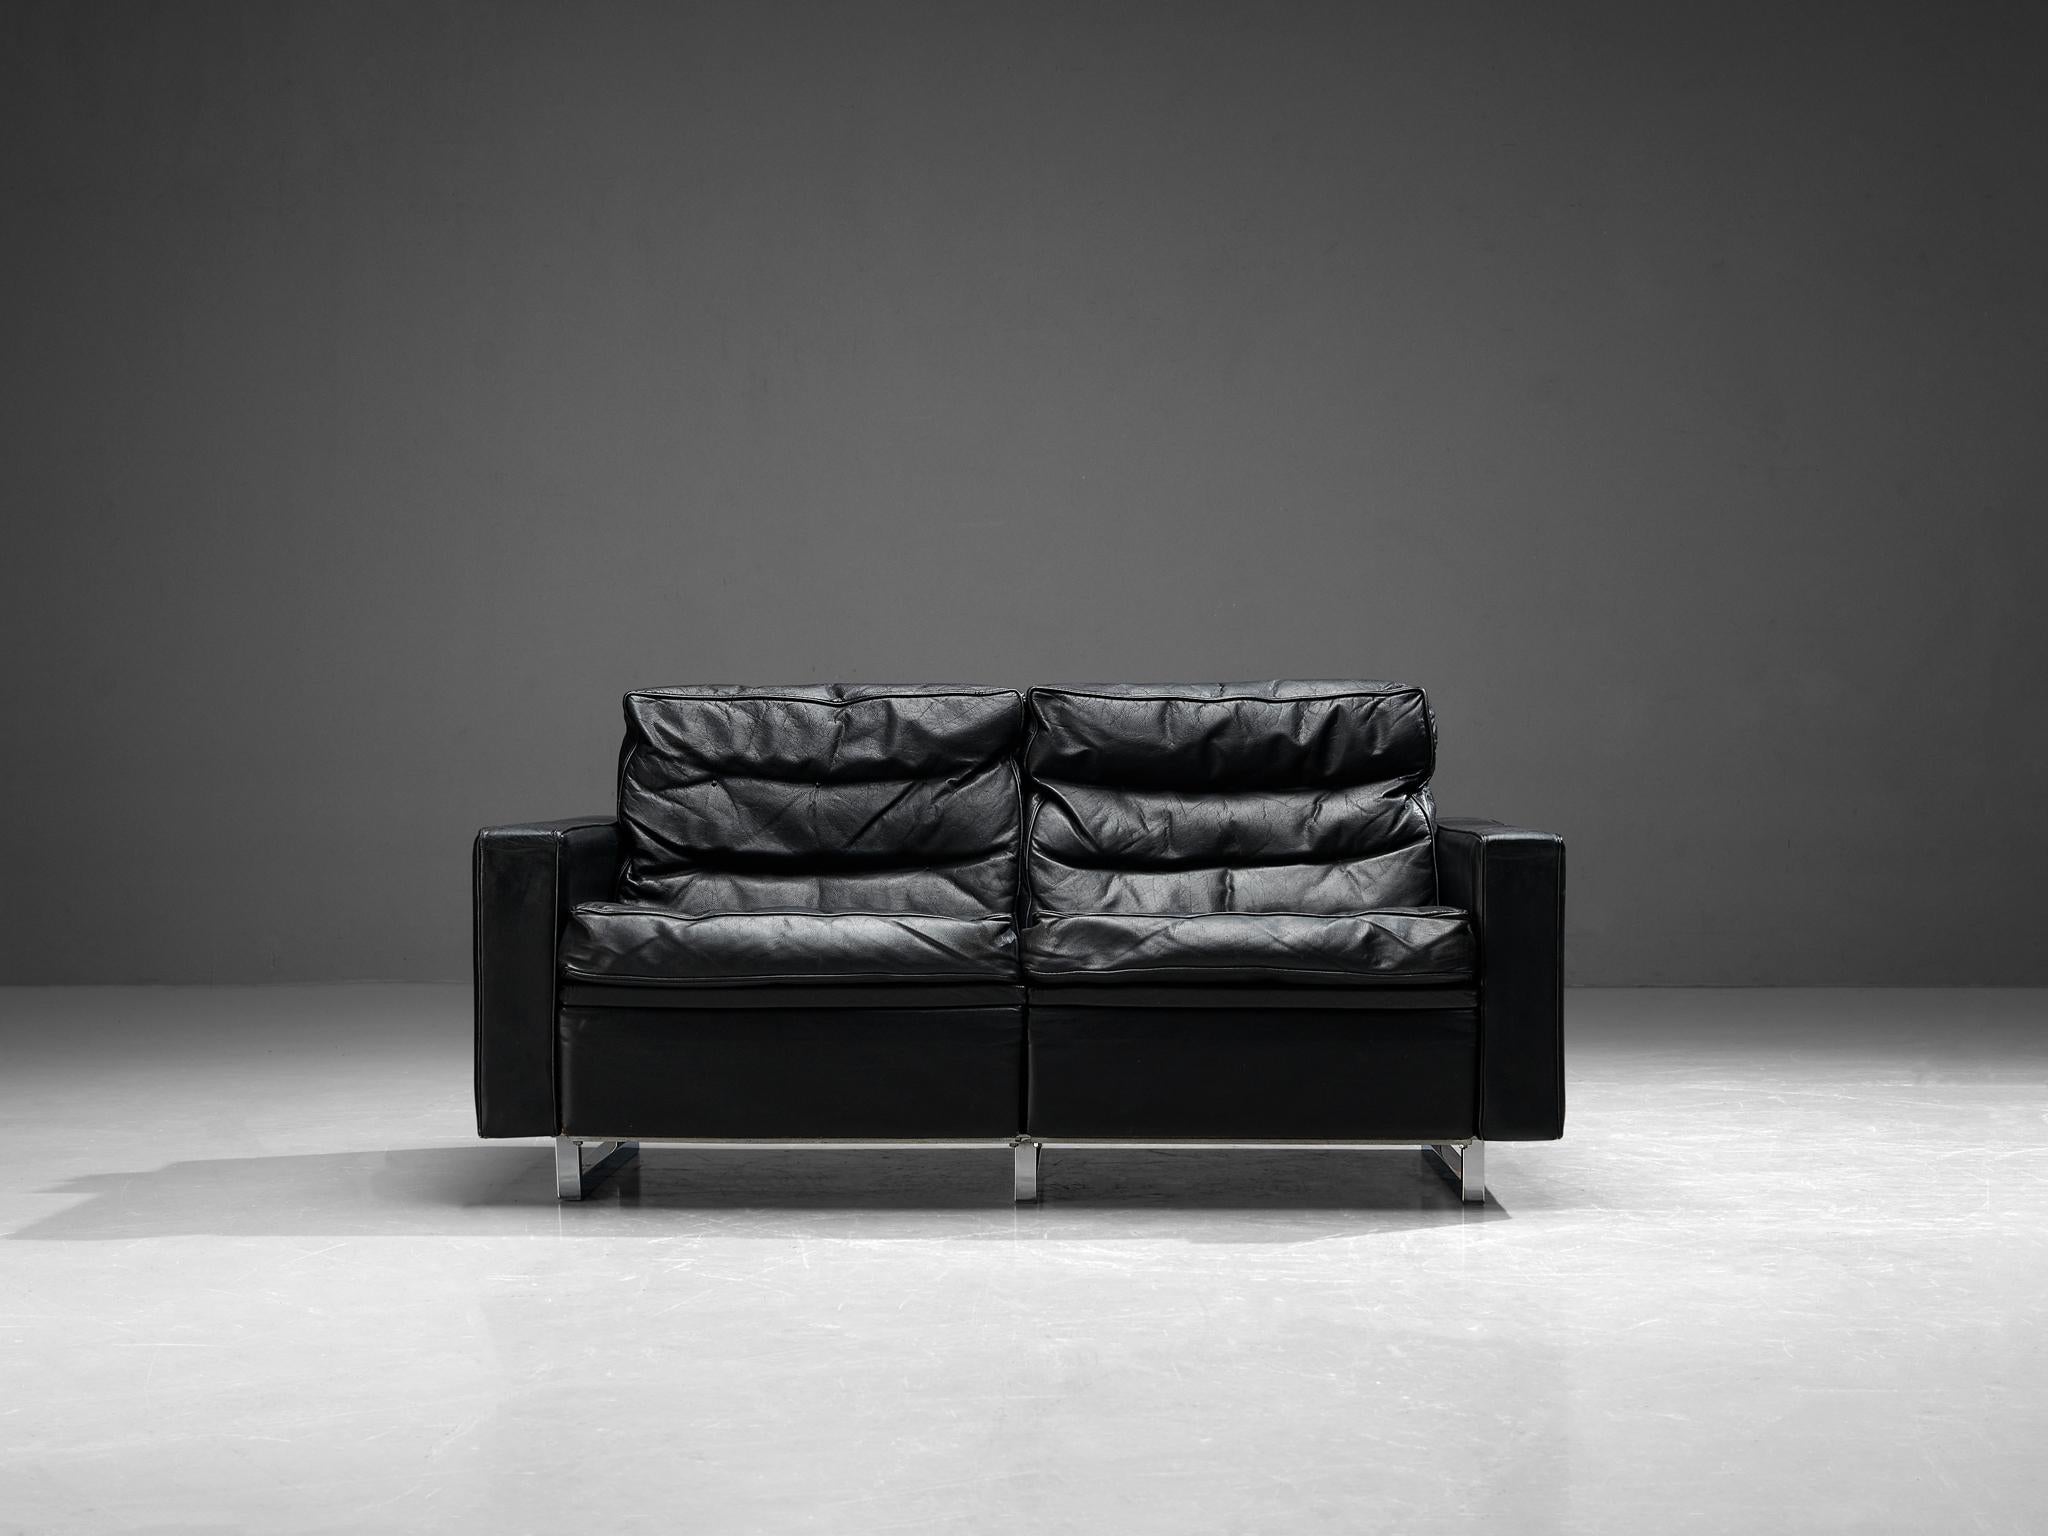 Canapé, cuir, Europe, années 1960.

Ce canapé deux places est simpliste, mais son design est élégant. Grâce à la couleur noire générale du similicuir, le canapé rayonne de douceur et souligne le design épuré. Il met donc en valeur les lignes droites